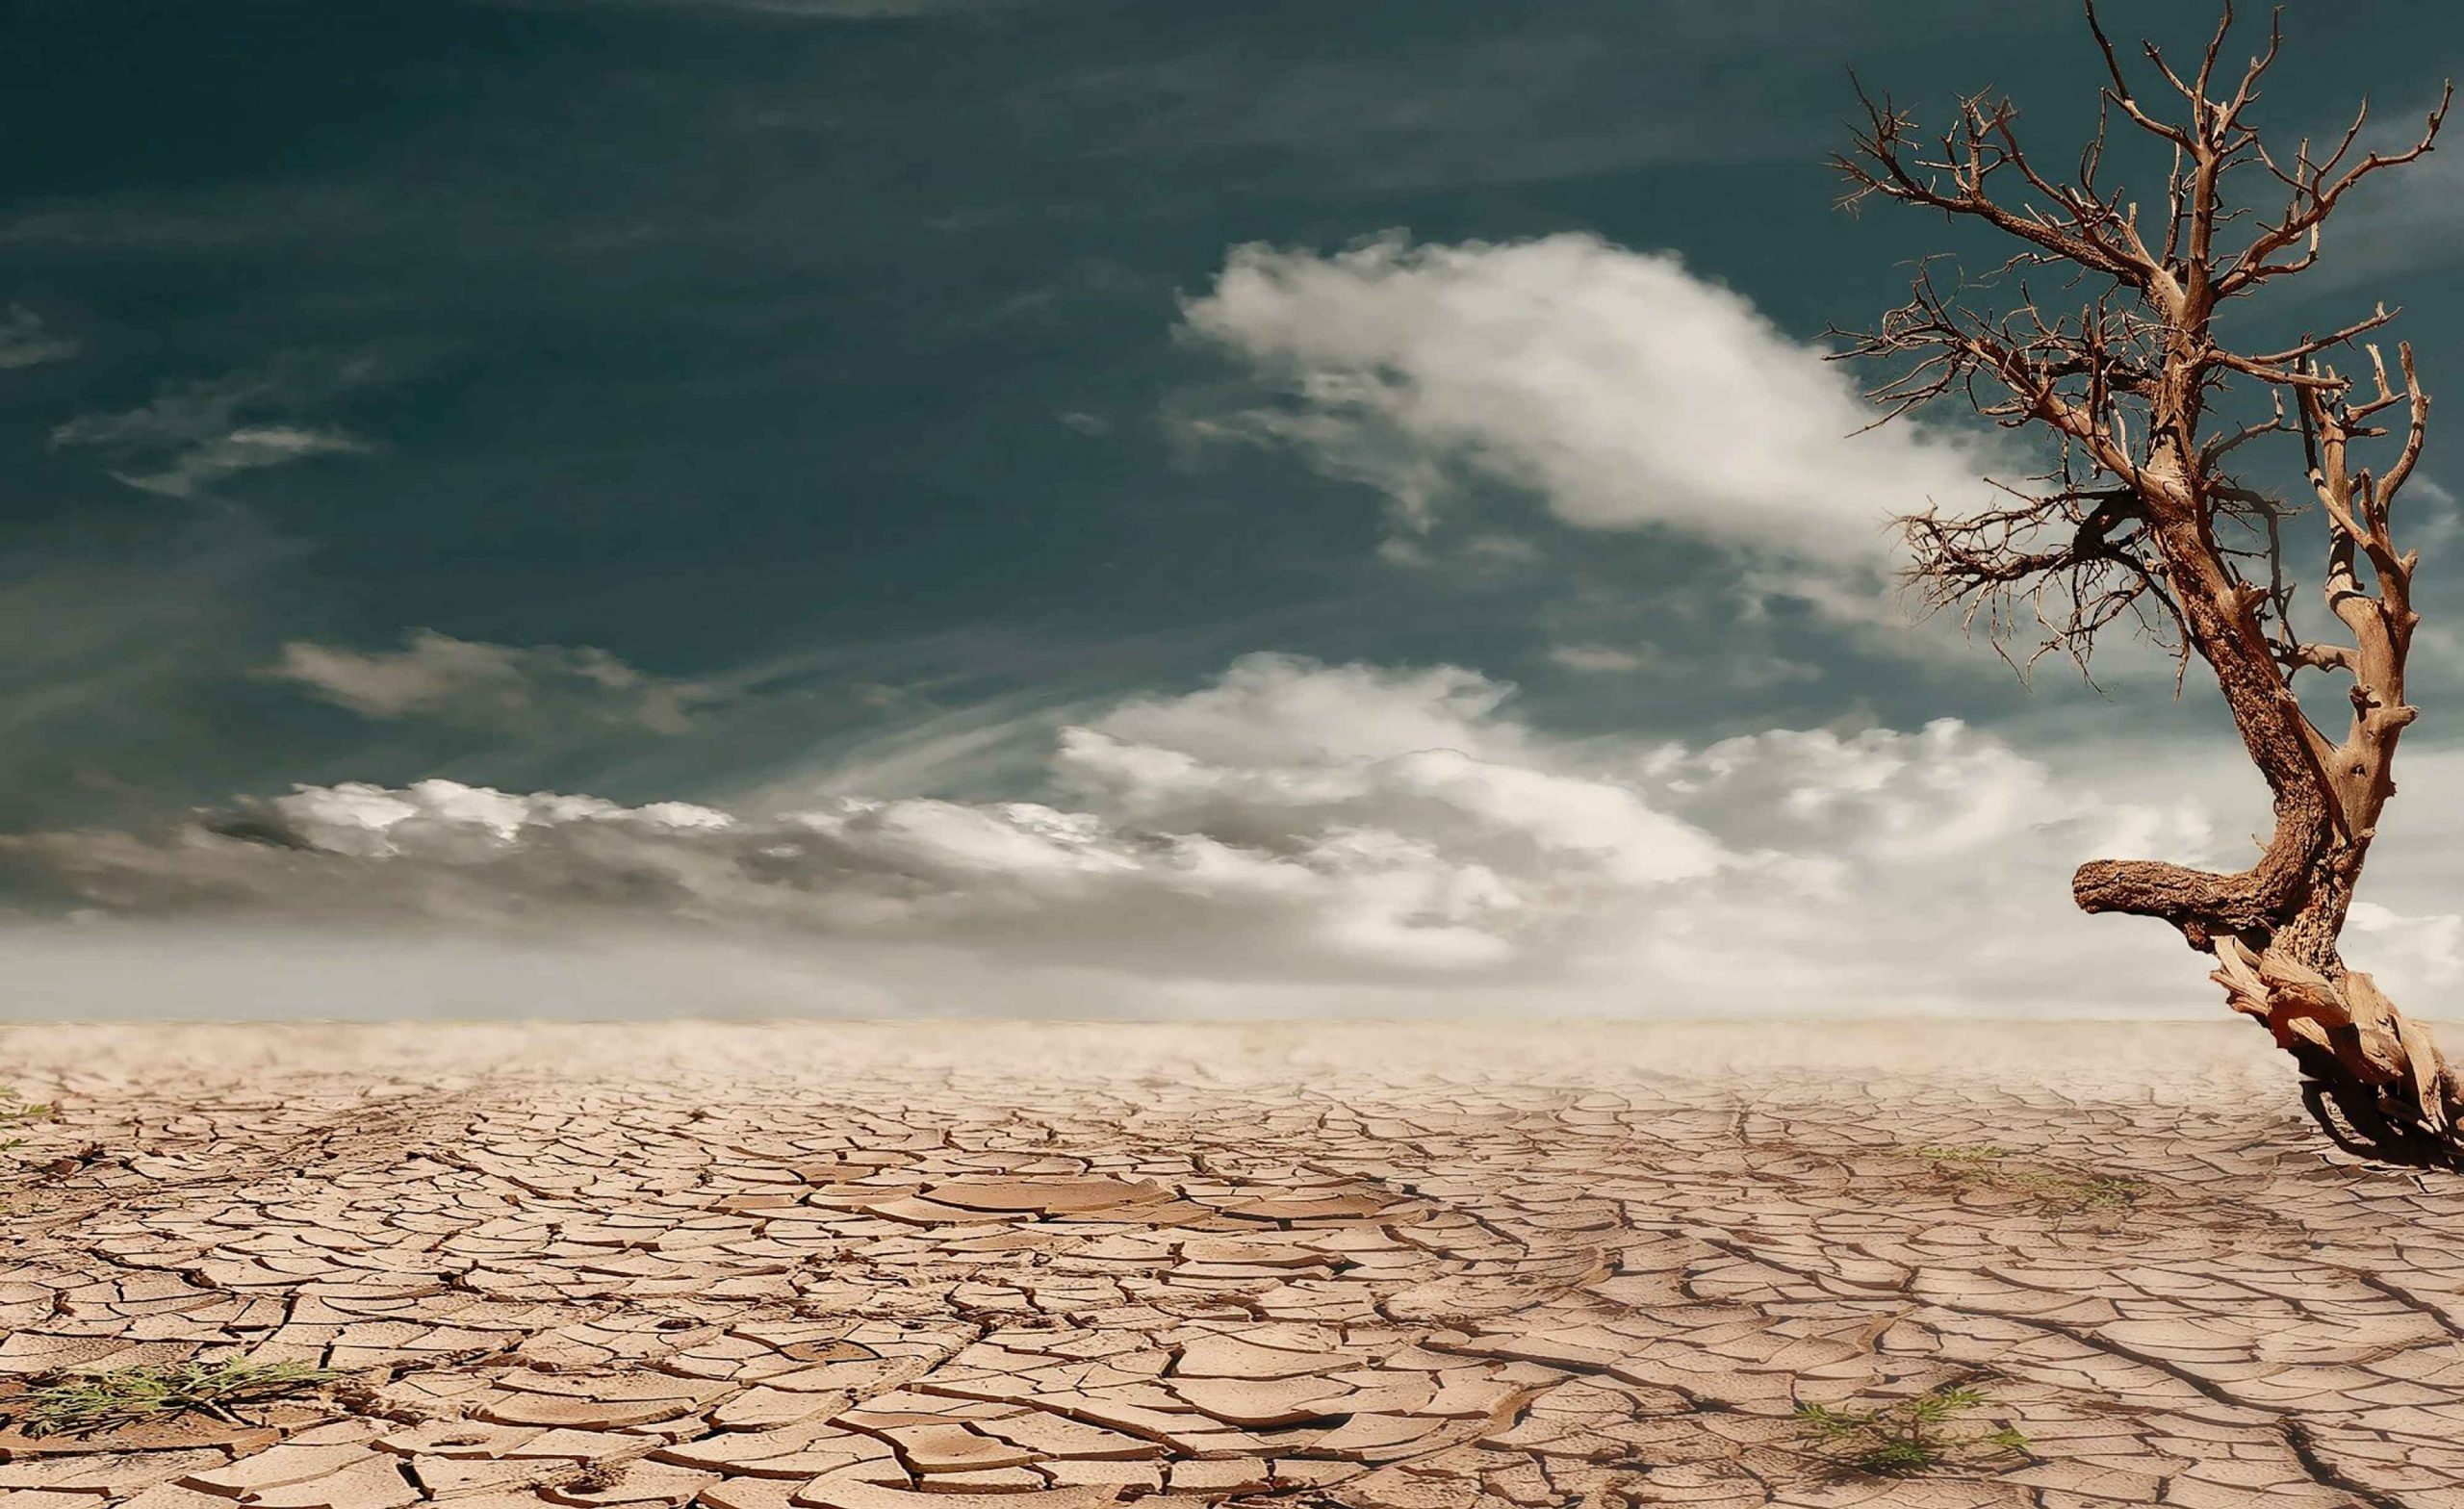 “İklim krizi ve kitlesel yok oluş karşısında gelecek 10 yıl son şansımız”